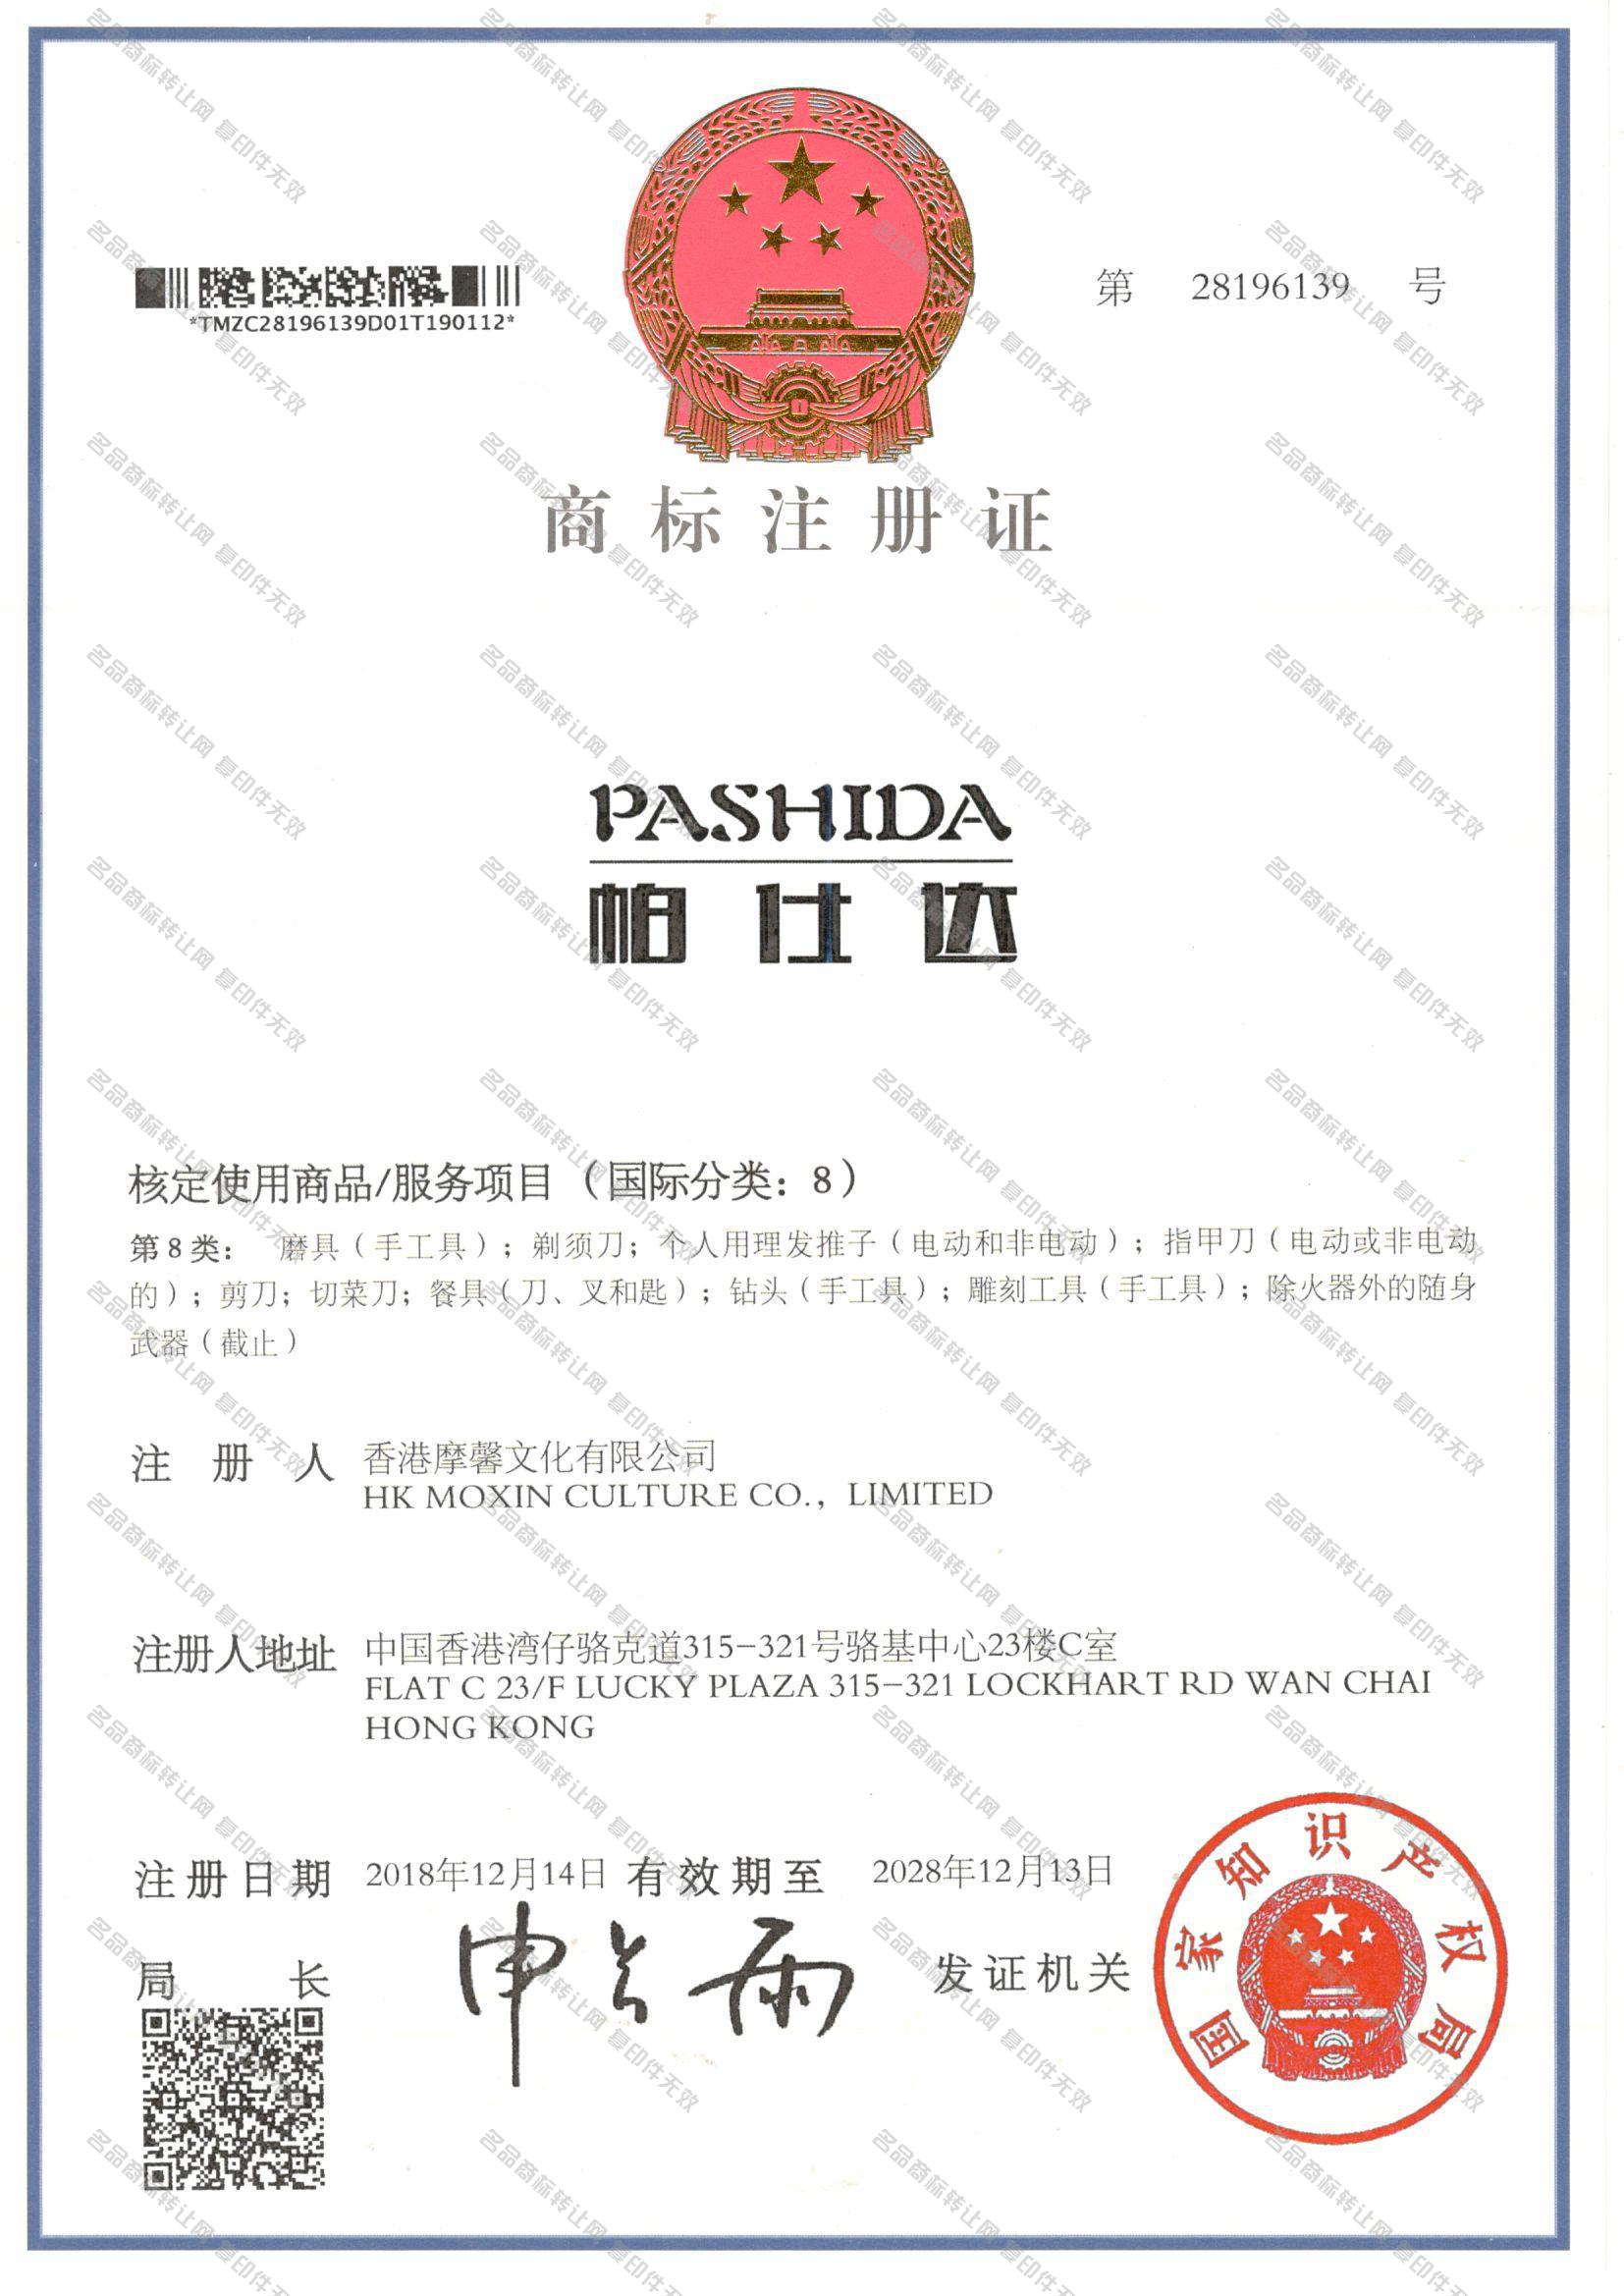 帕仕达 PASHIDA注册证